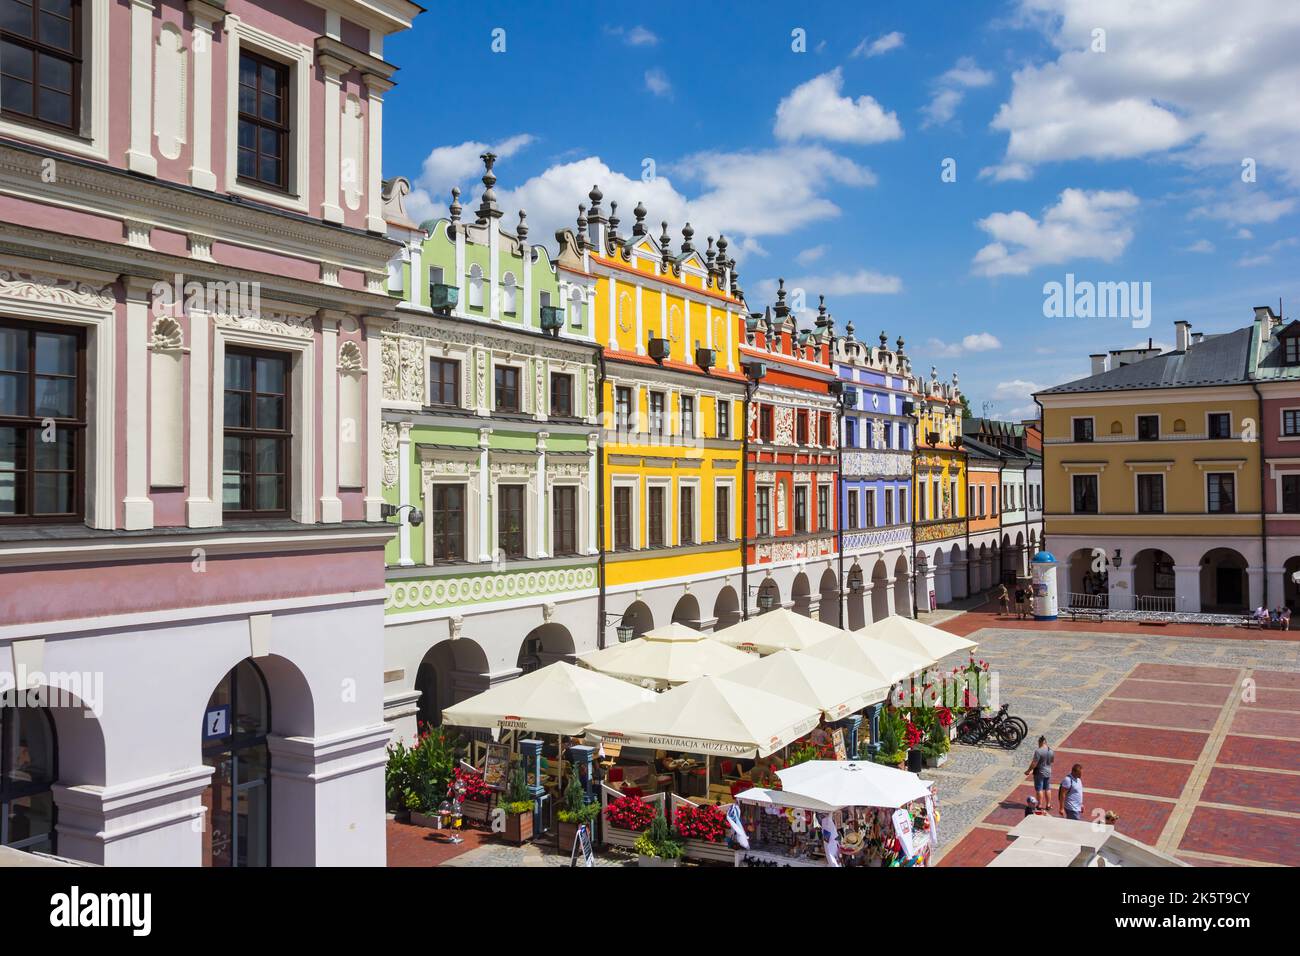 Plaza del mercado con casas históricas en el colorido Zamosc, Polonia Foto de stock